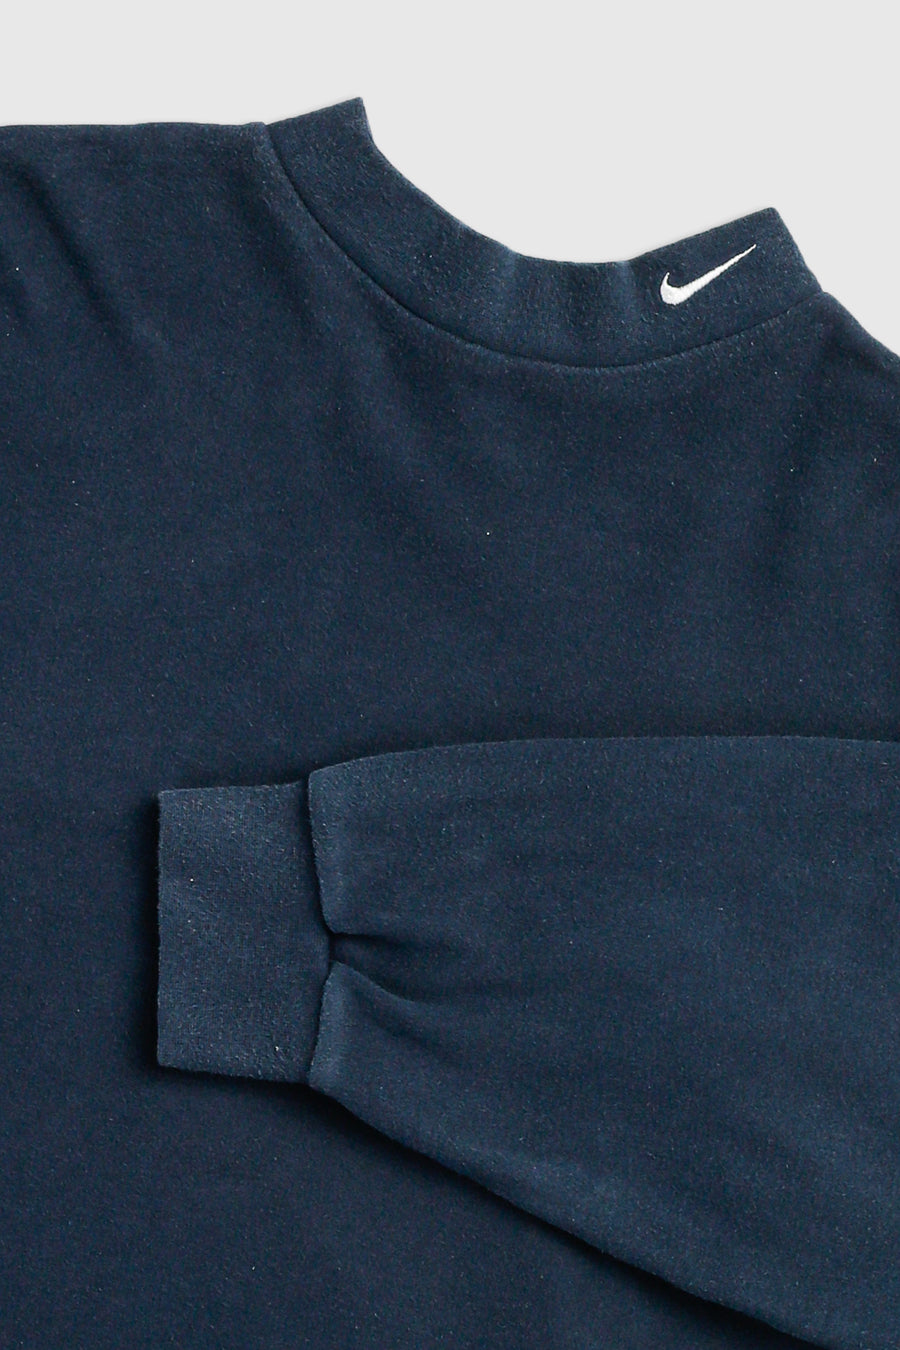 Vintage Nike Long Sleeve Tee - L